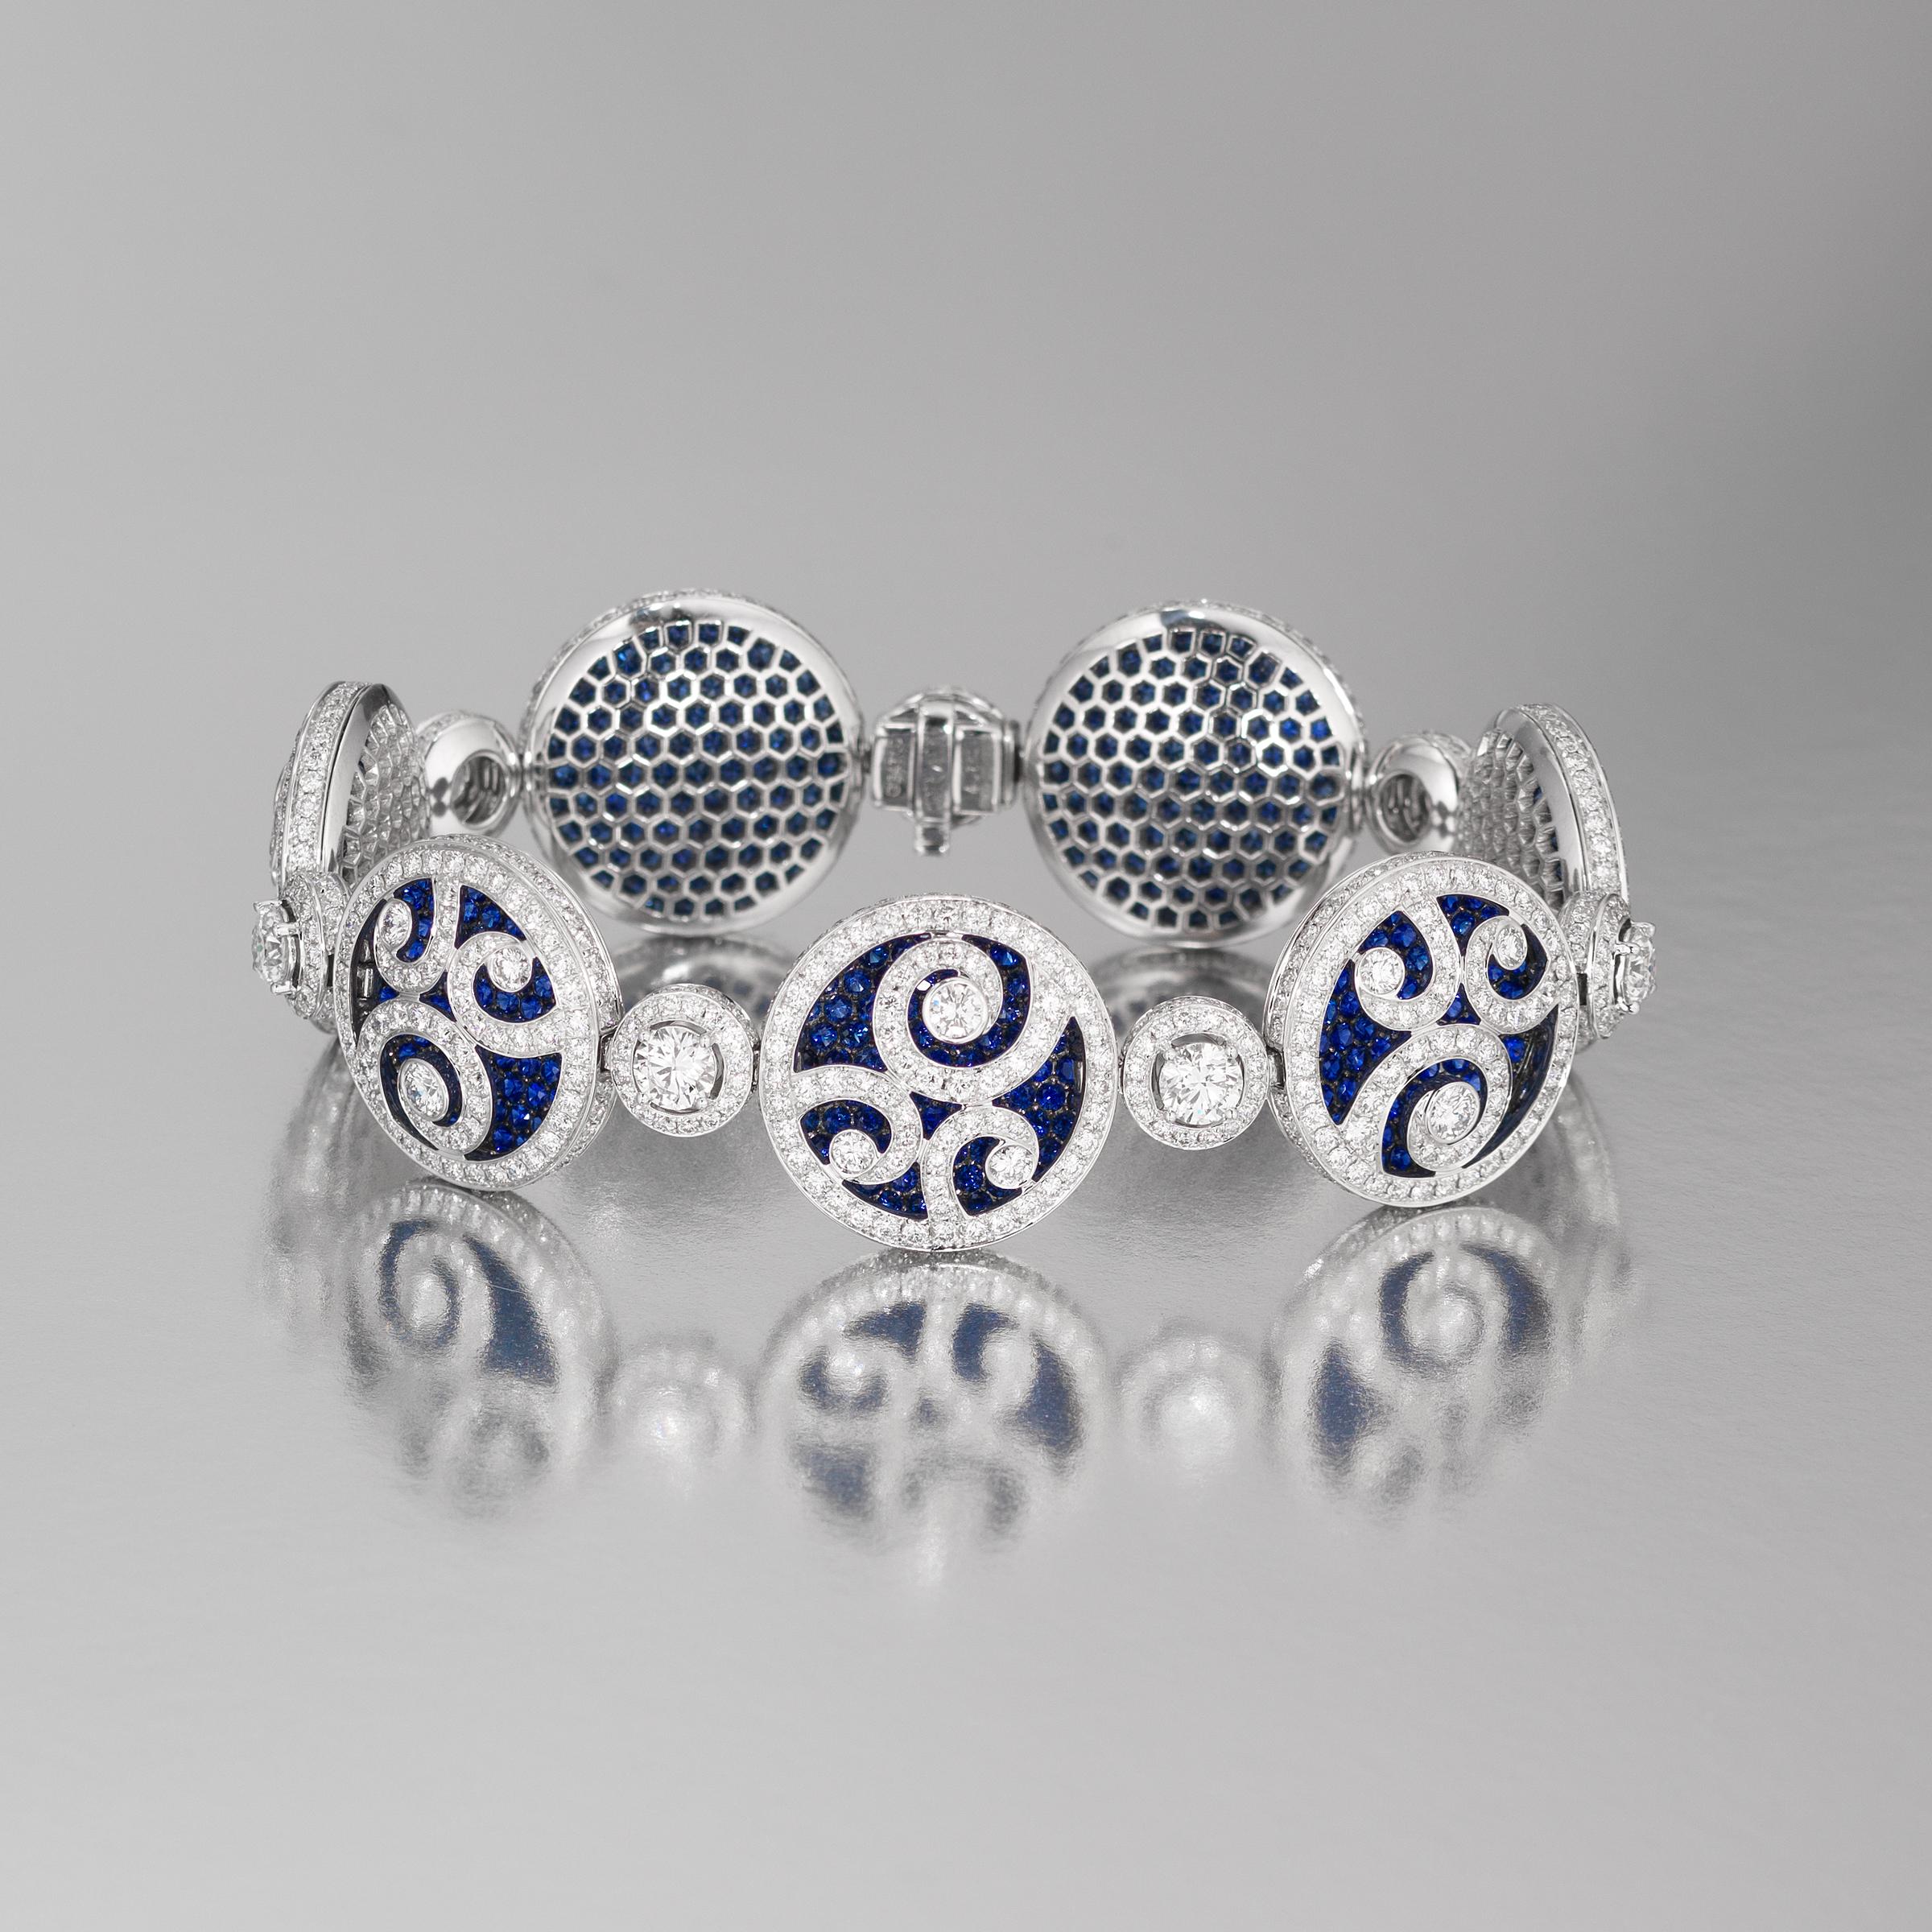 Exceptionnel bracelet de haute joaillerie Graff au design éblouissant de médaillon, mettant en valeur 11,65 carats de diamants blancs de qualité supérieure (couleur approximative E à G, pureté VVS à VS) et 10,93 carats de saphirs bleus richement